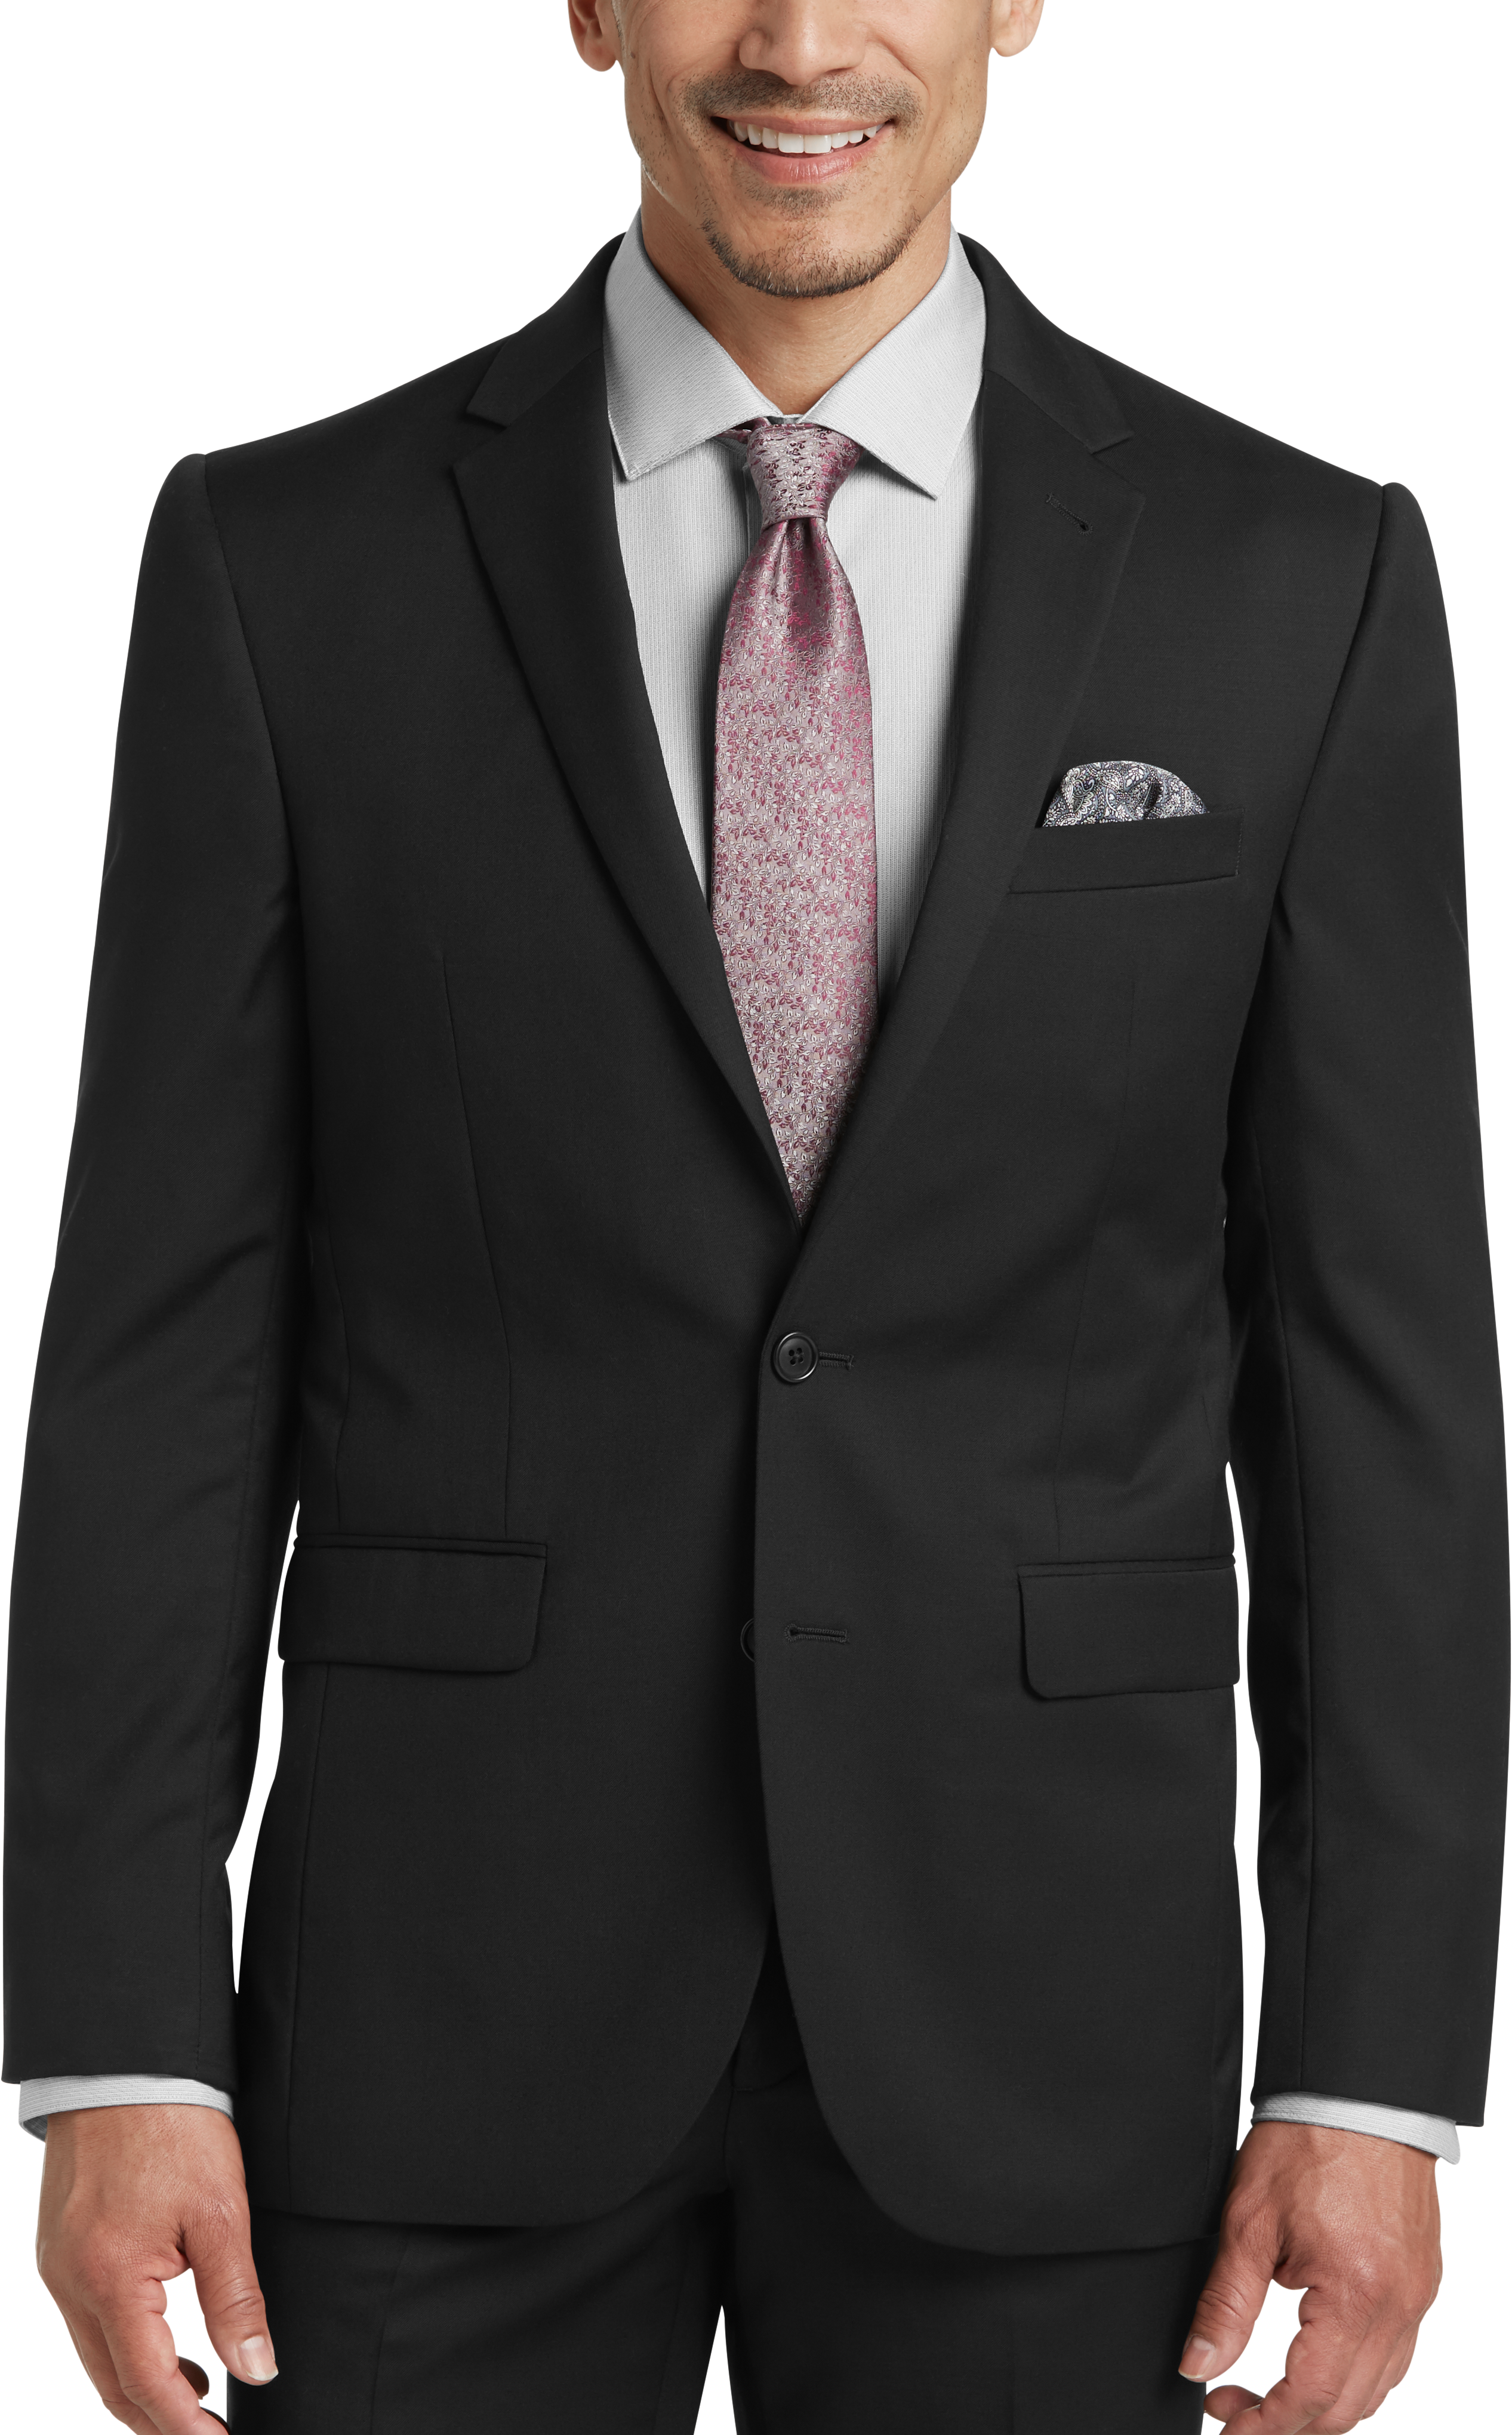 JOE Joseph Abboud Black Modern Fit Suit Separates Coat - Men's Suits ...